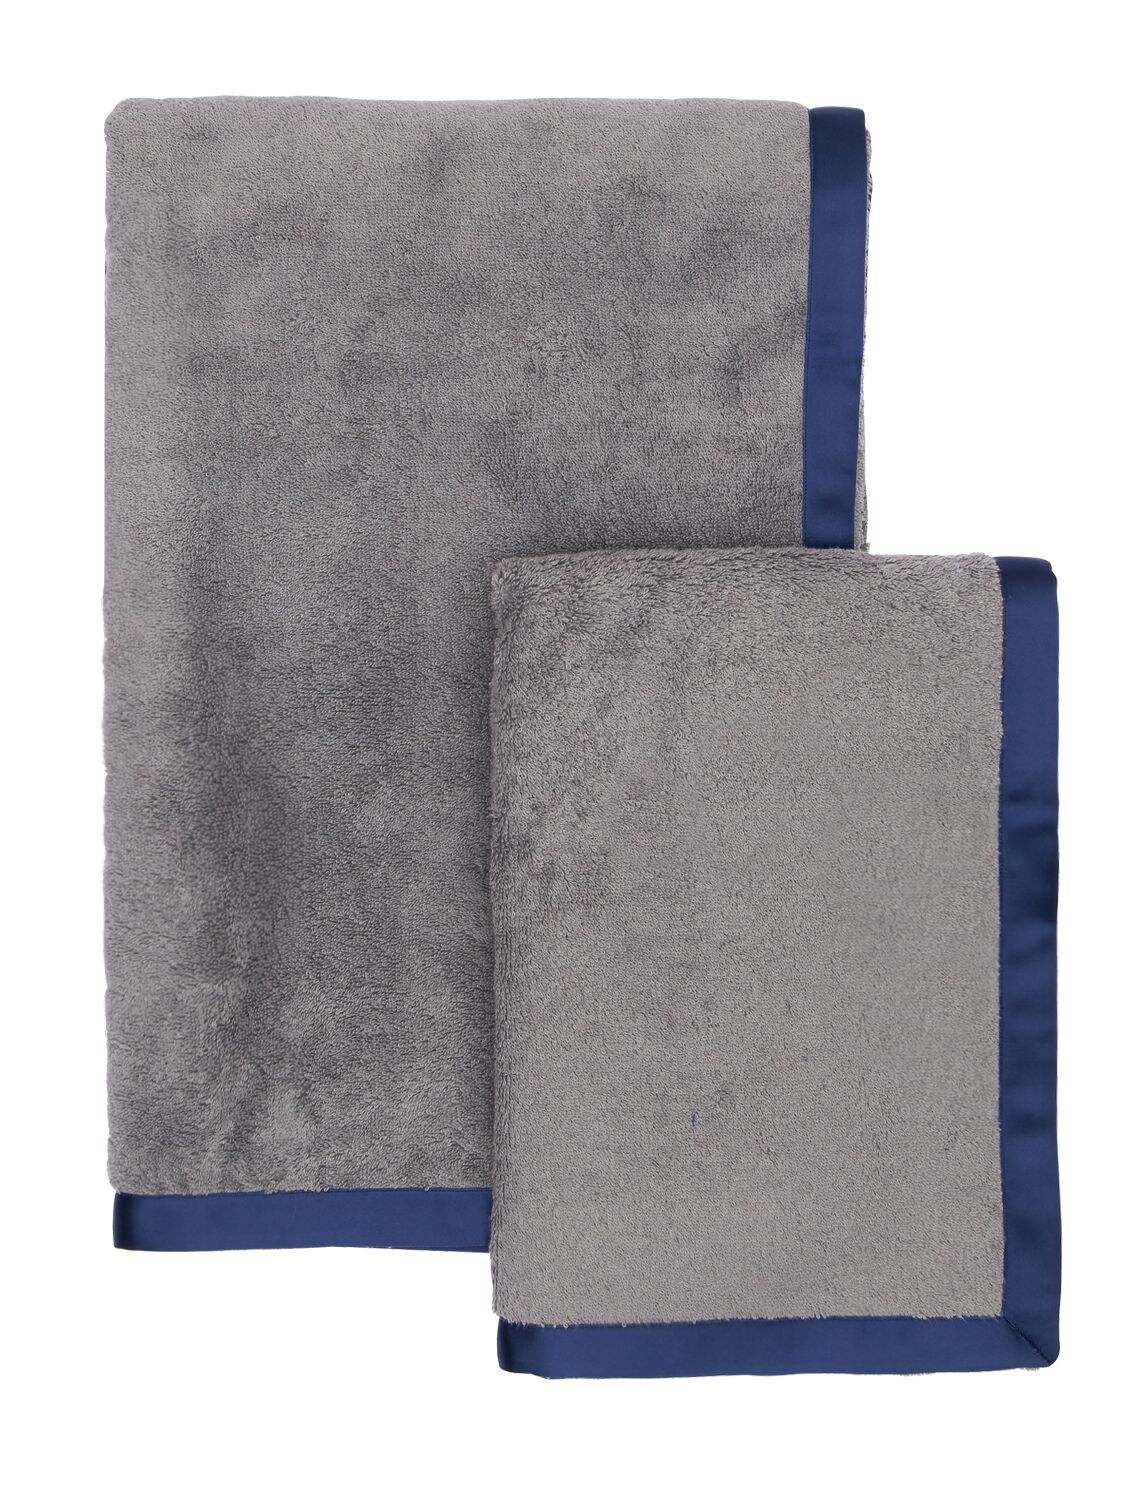 Alessandro Di Marco 毛巾2件套 In Grey,blue